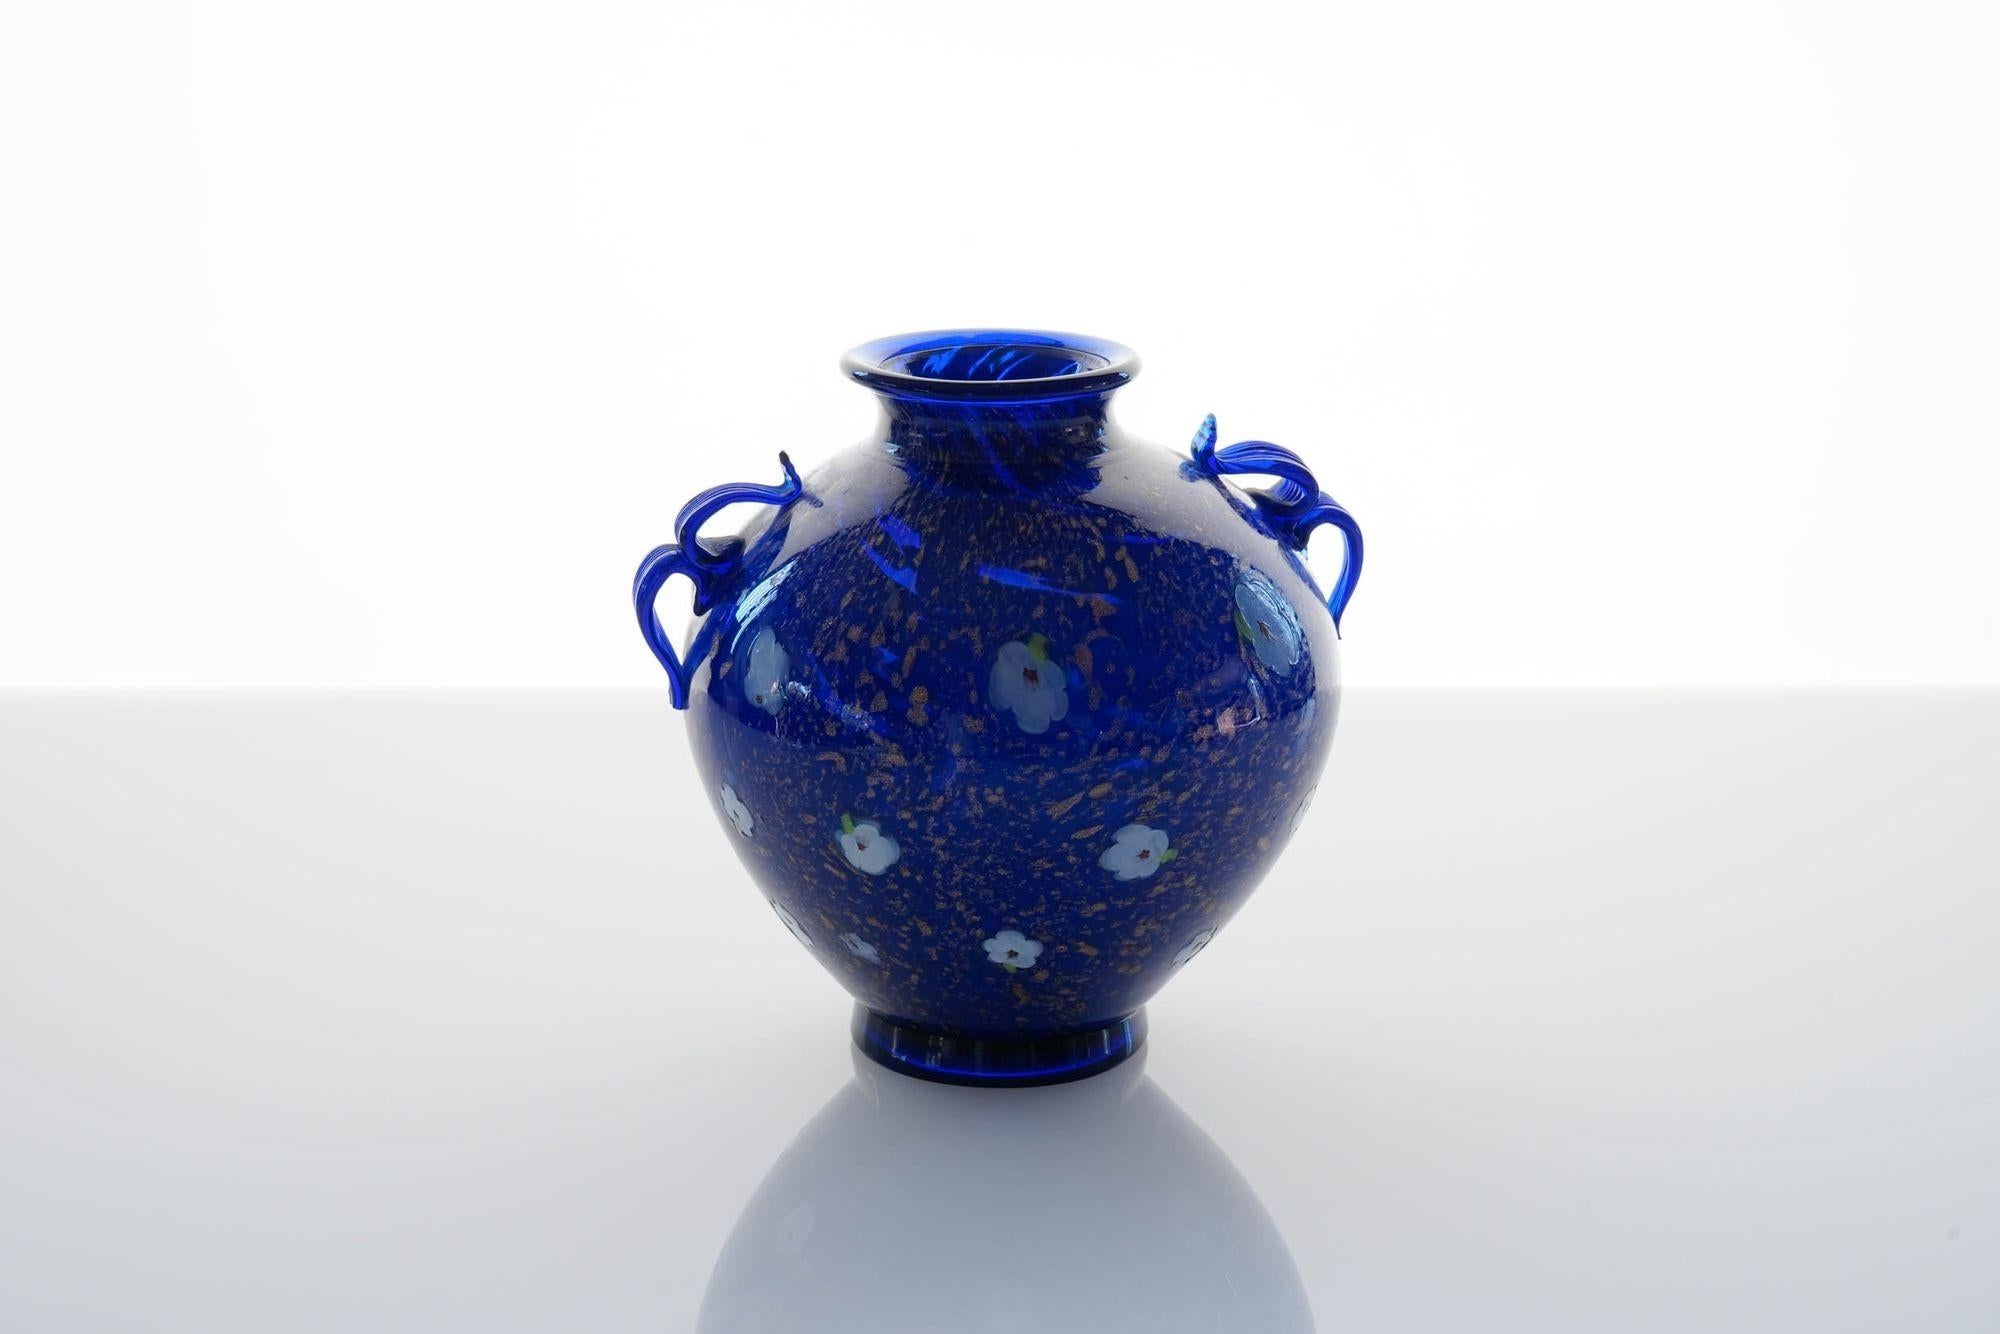 Seltene Vase aus kobaltblauem Glas von Fratelli Toso.
Die Oberfläche der Vase ist mit Avventurina-Sprenkeln versehen, die über das Glas geschmolzen sind (Tociato auf Muranesisch) und an Lapislazuli-Edelsteine erinnern. Darüber ist die Vase mit